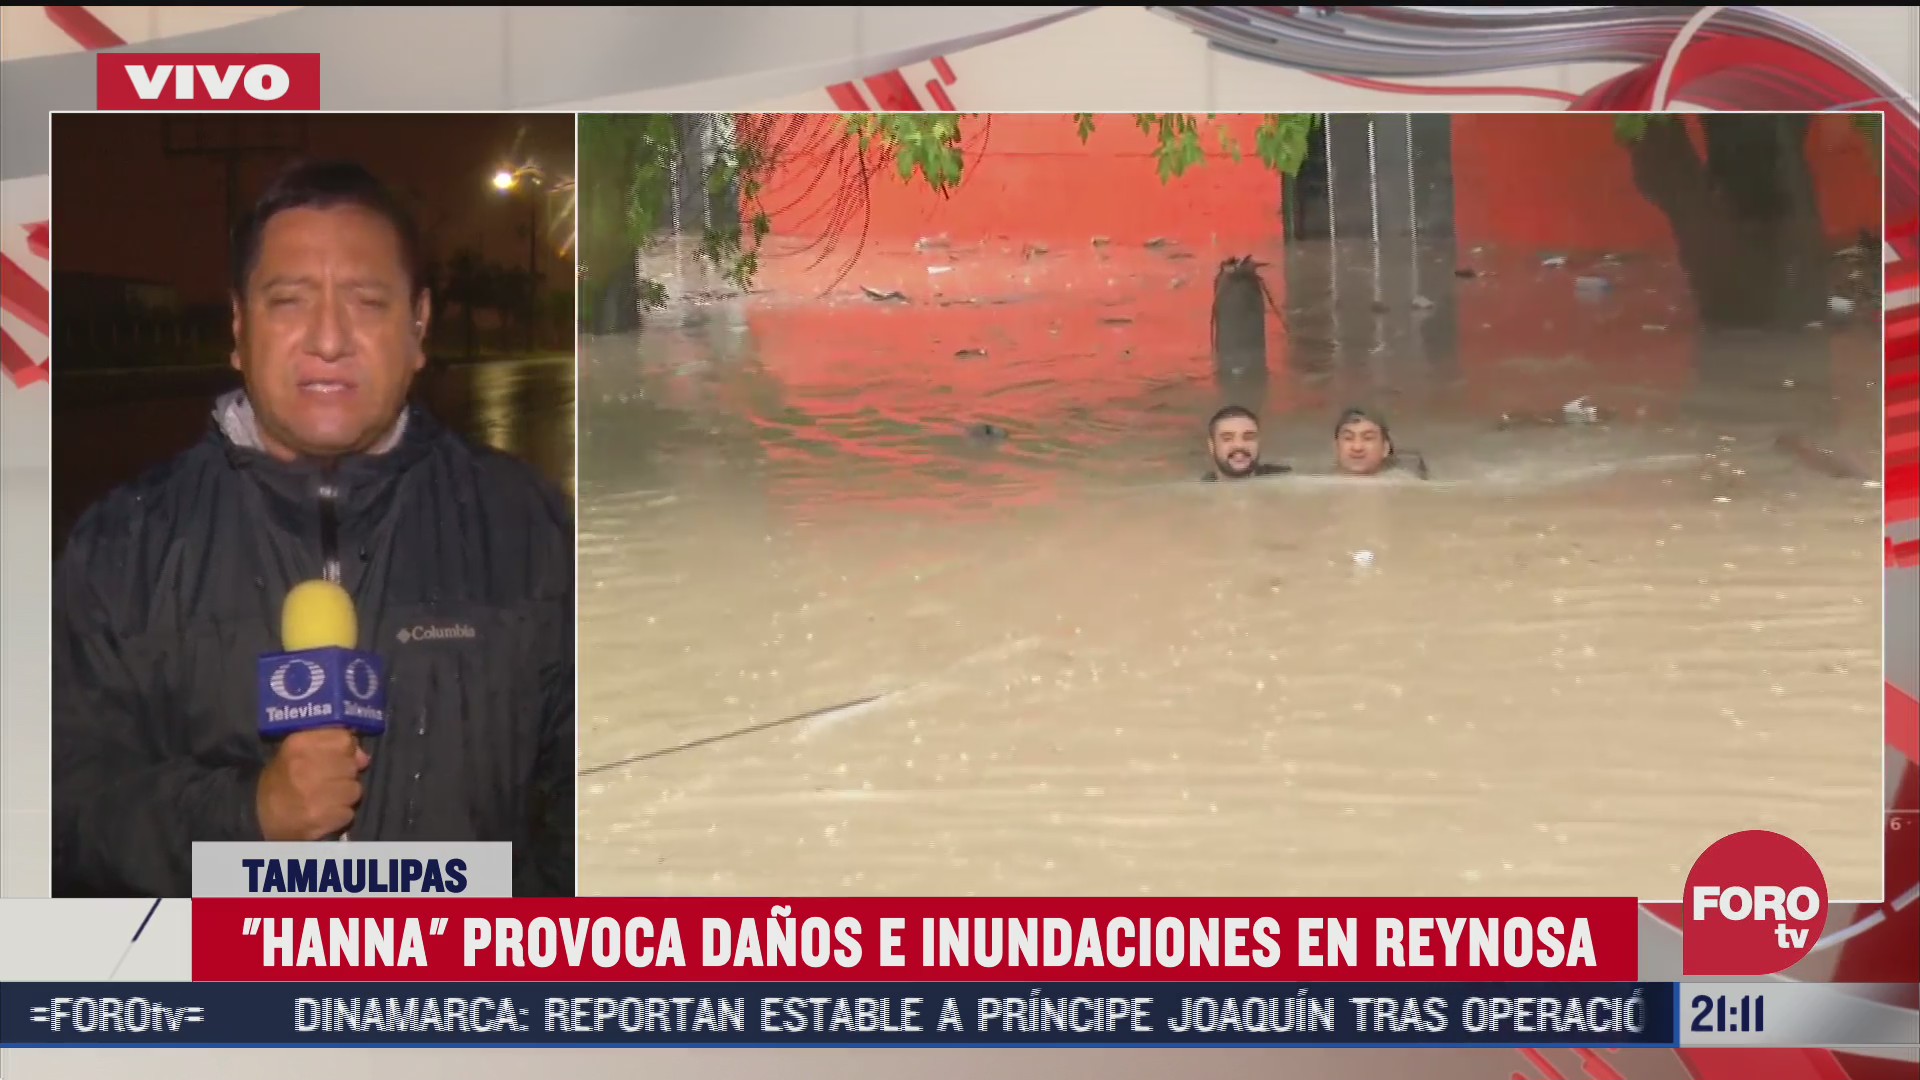 FOTO: 26 de julio 2020, habitantes de reynosa limpian canal tras fuertes lluvias